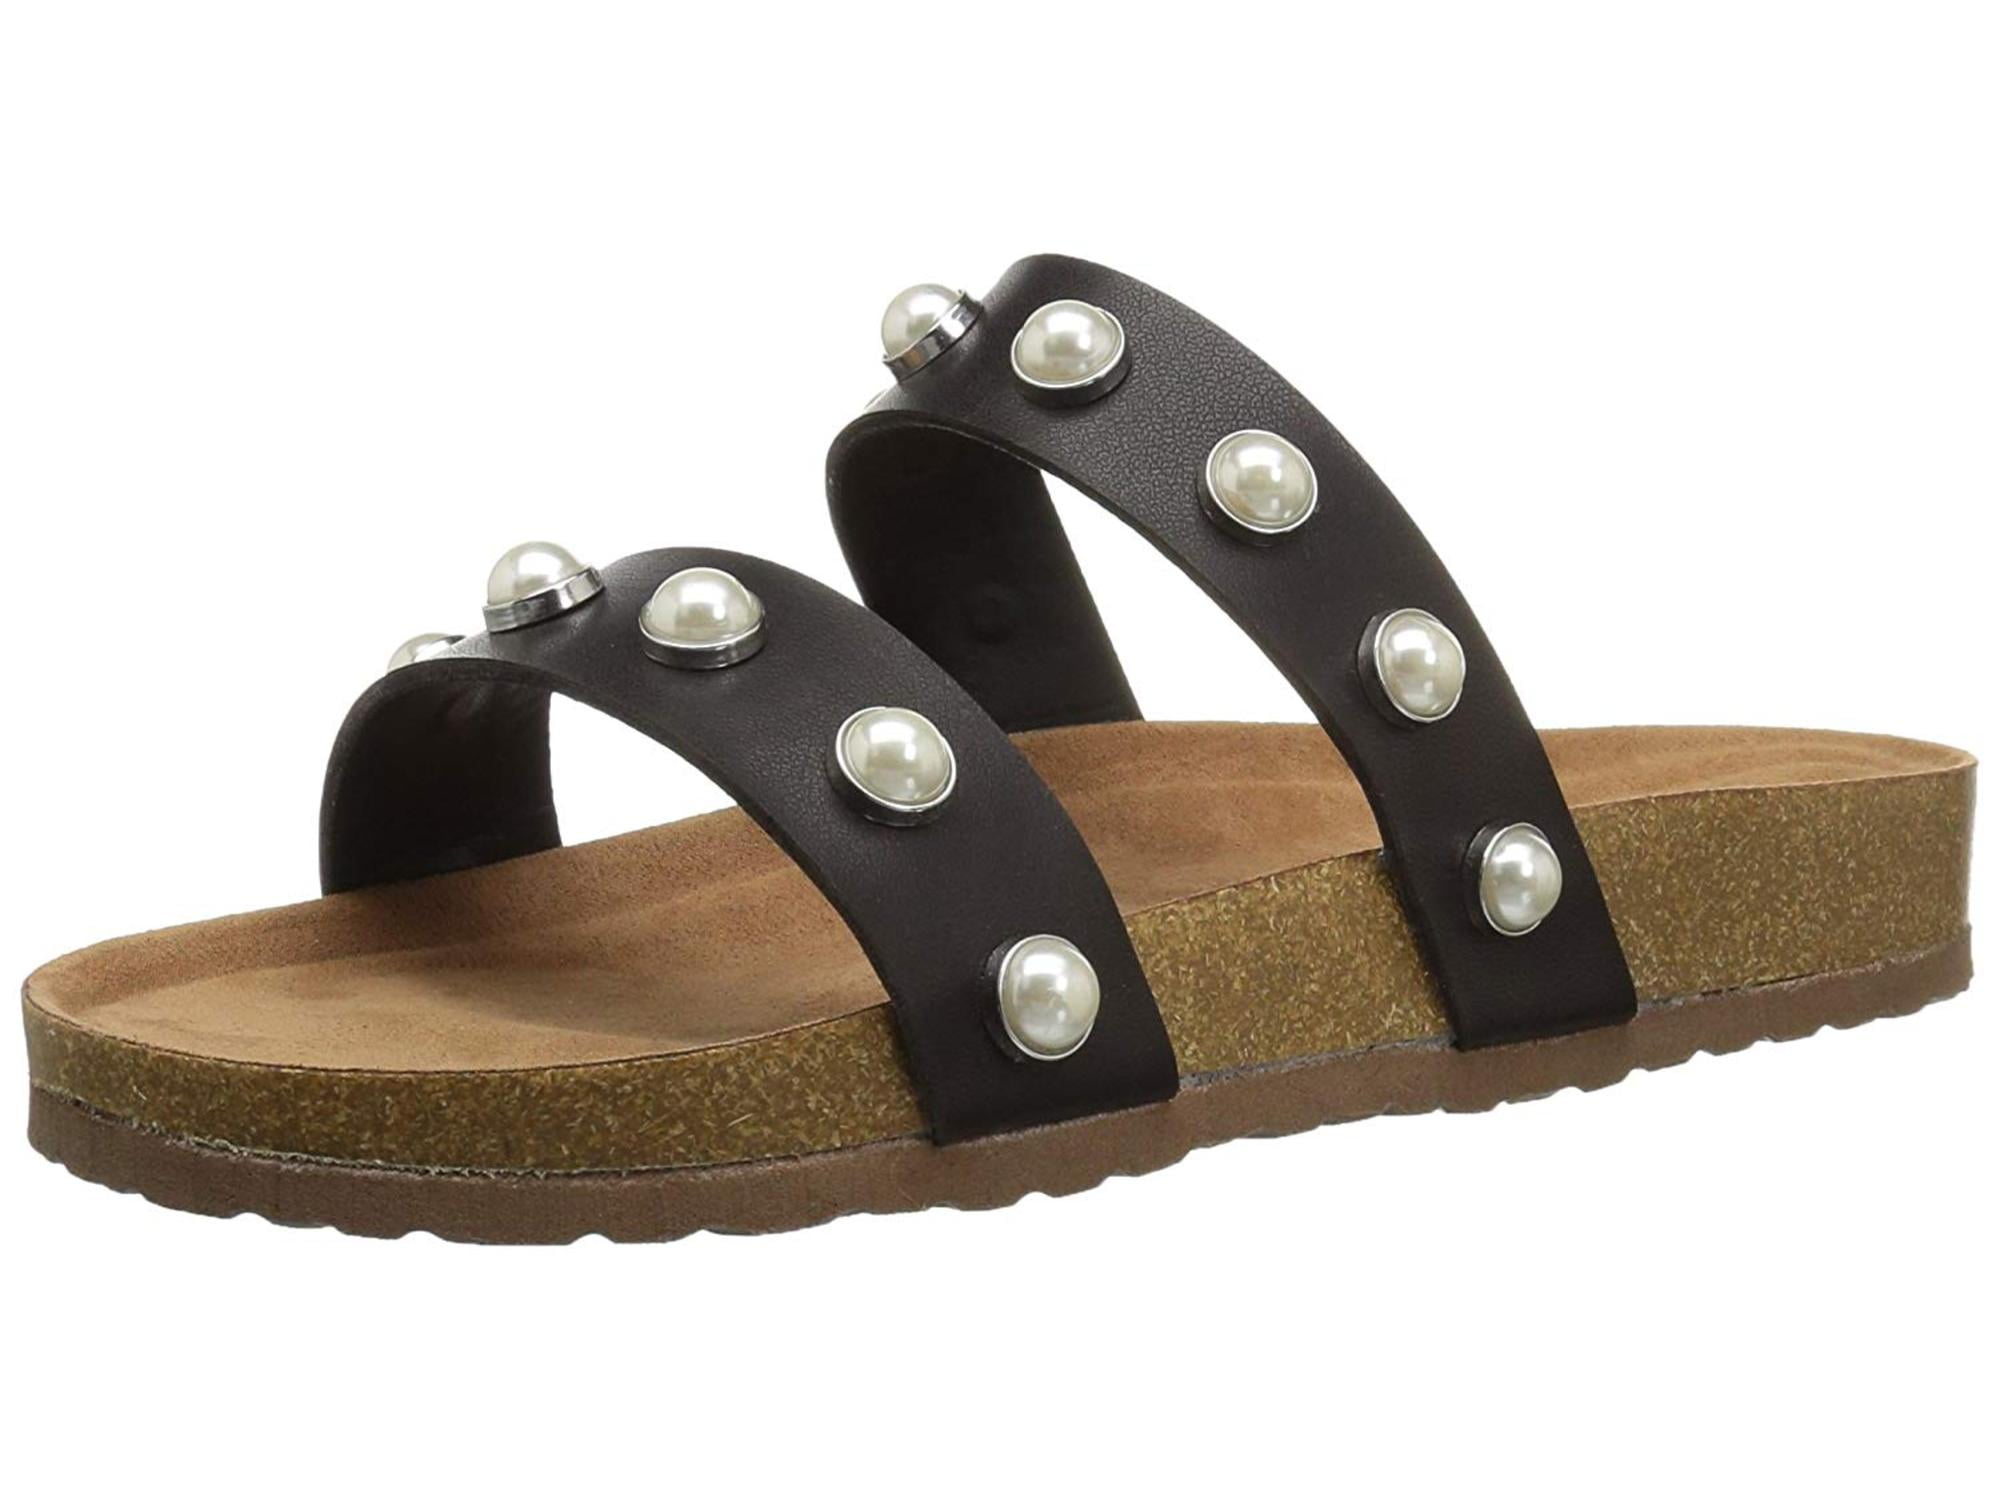 steve madden women's slide sandals